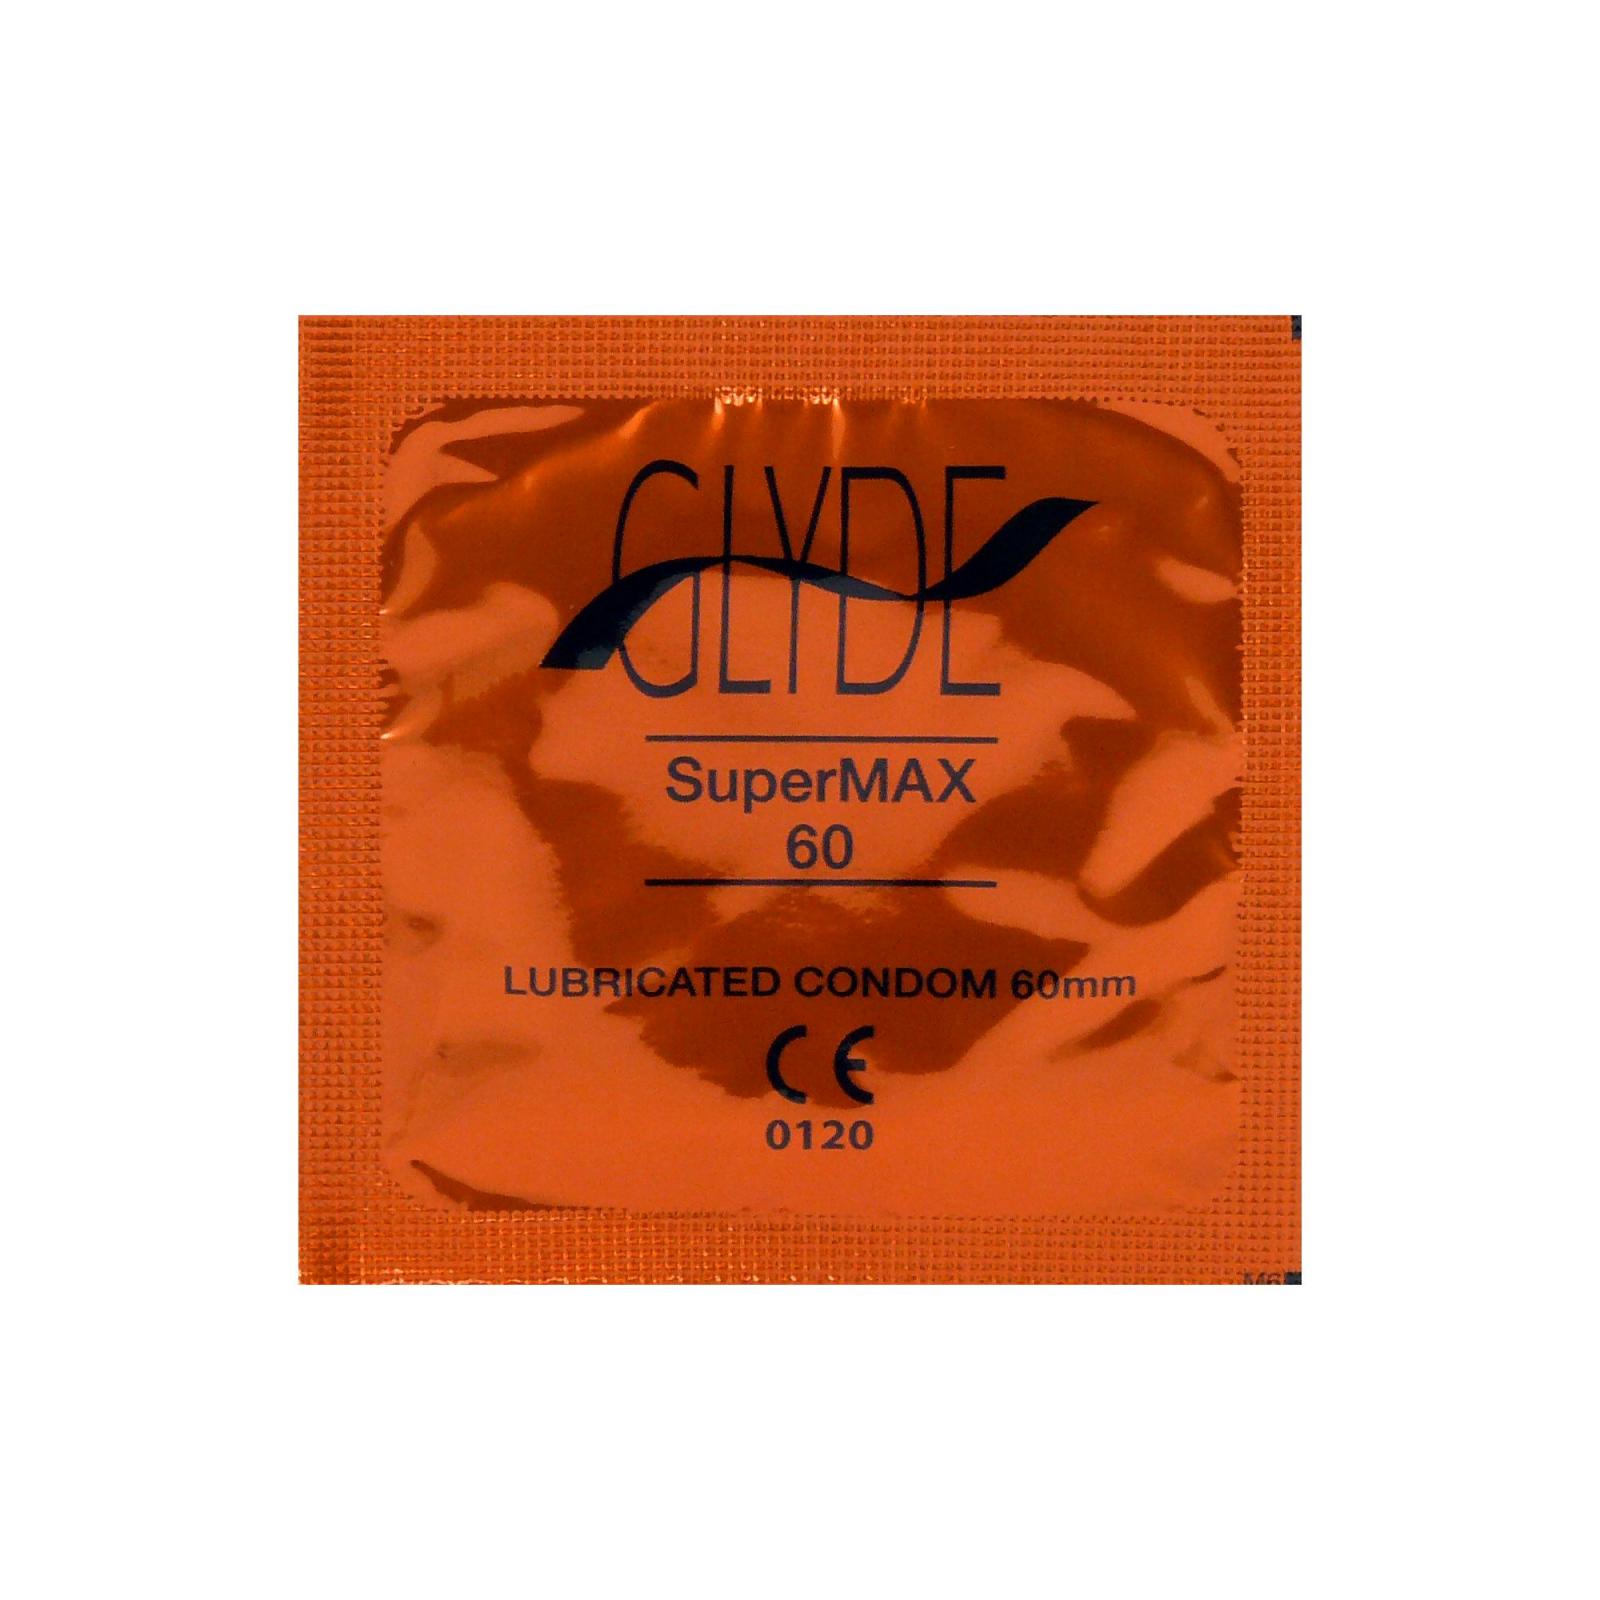 Glyde Kondomy Supermax 10 ks